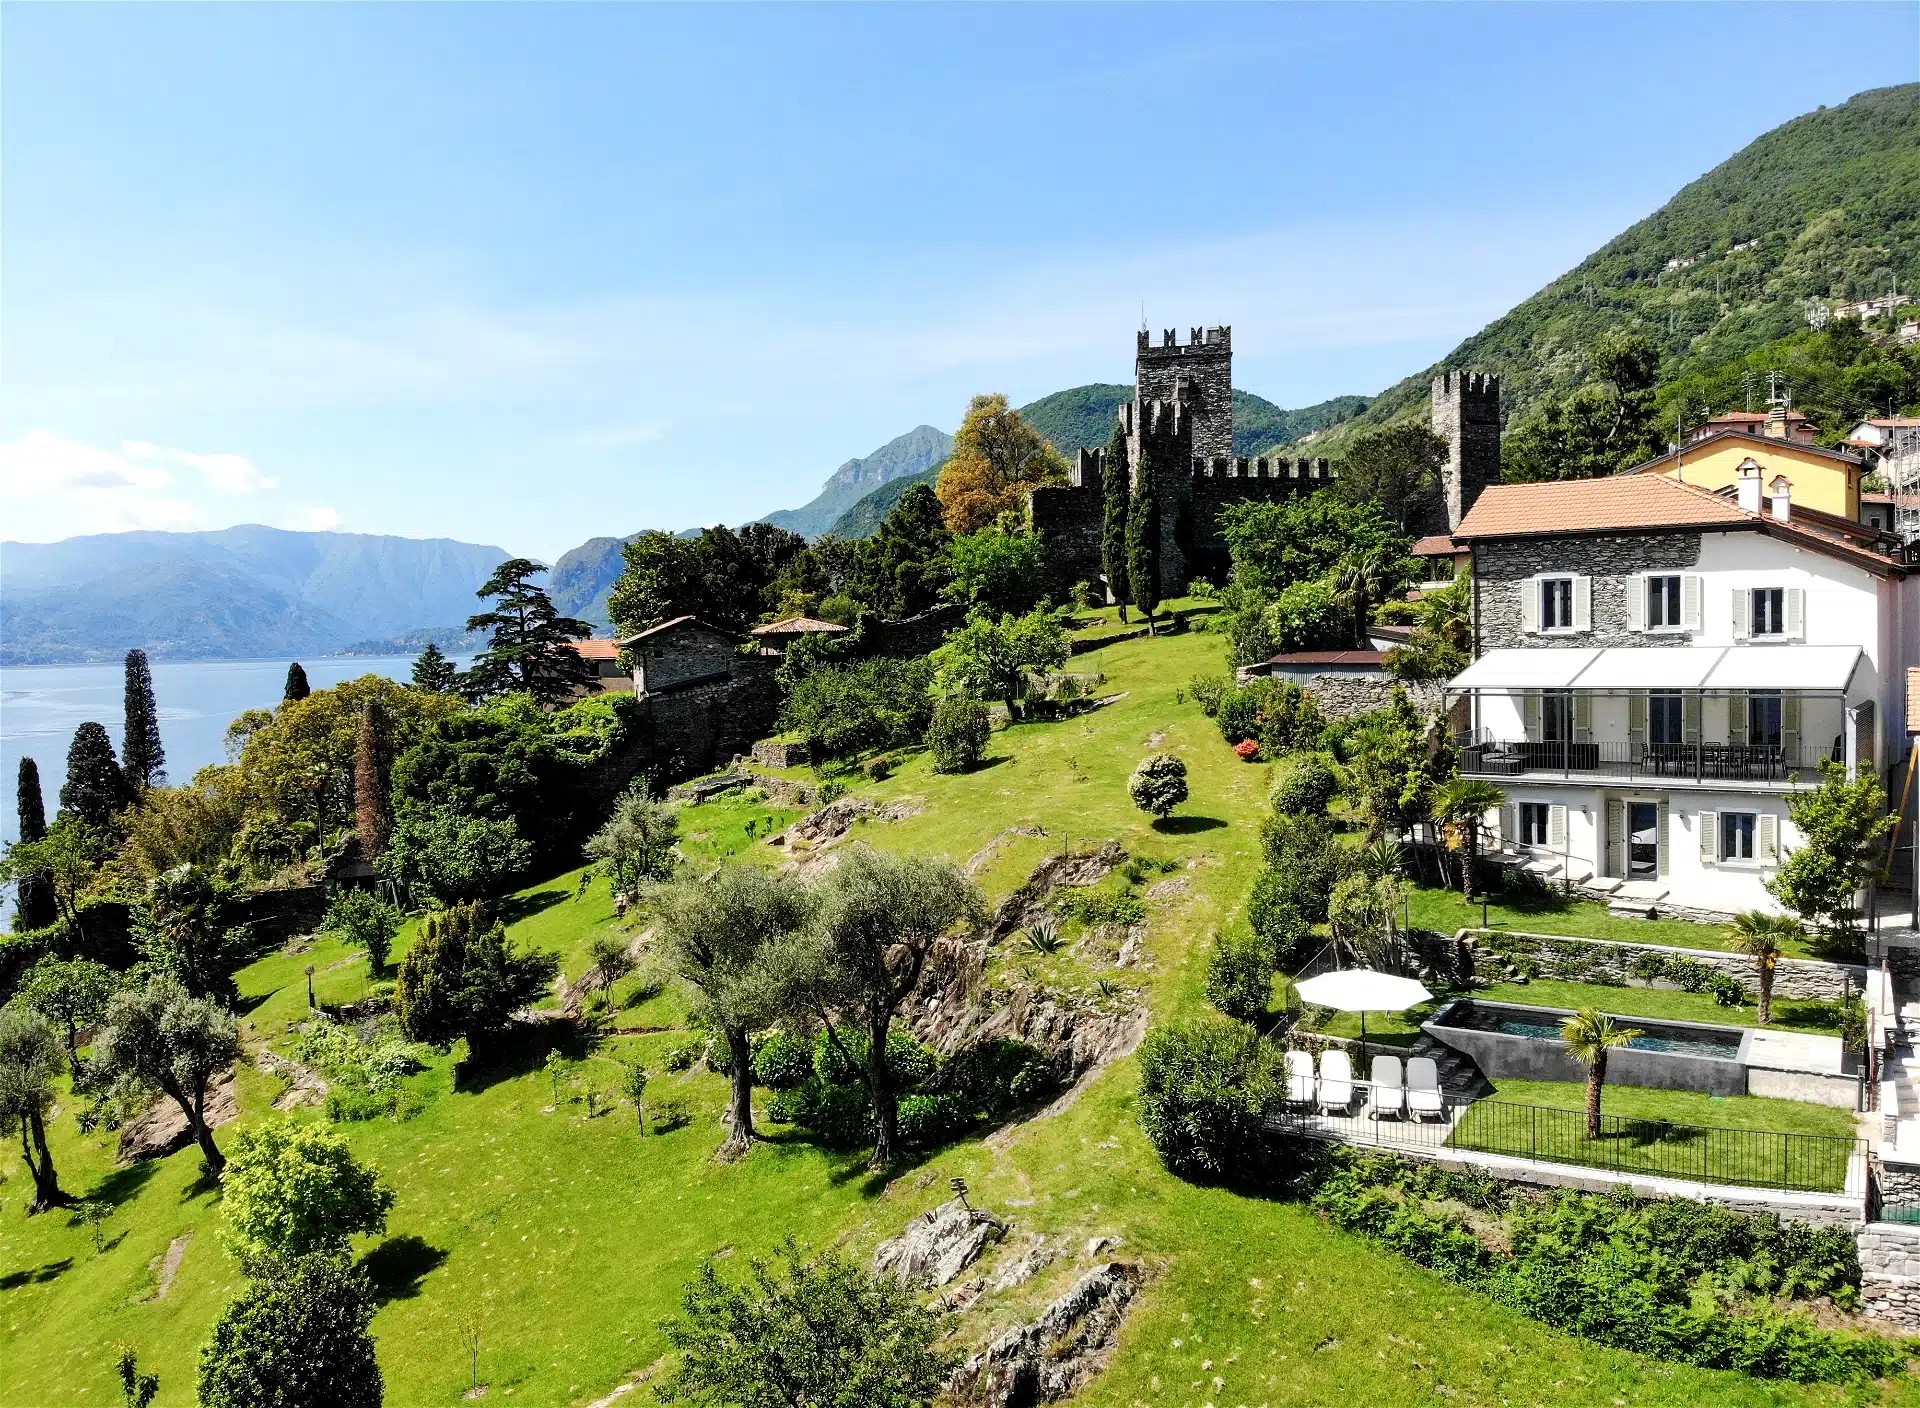 Luxury Villa, Lake Como, fundraiser auction items, live auction items